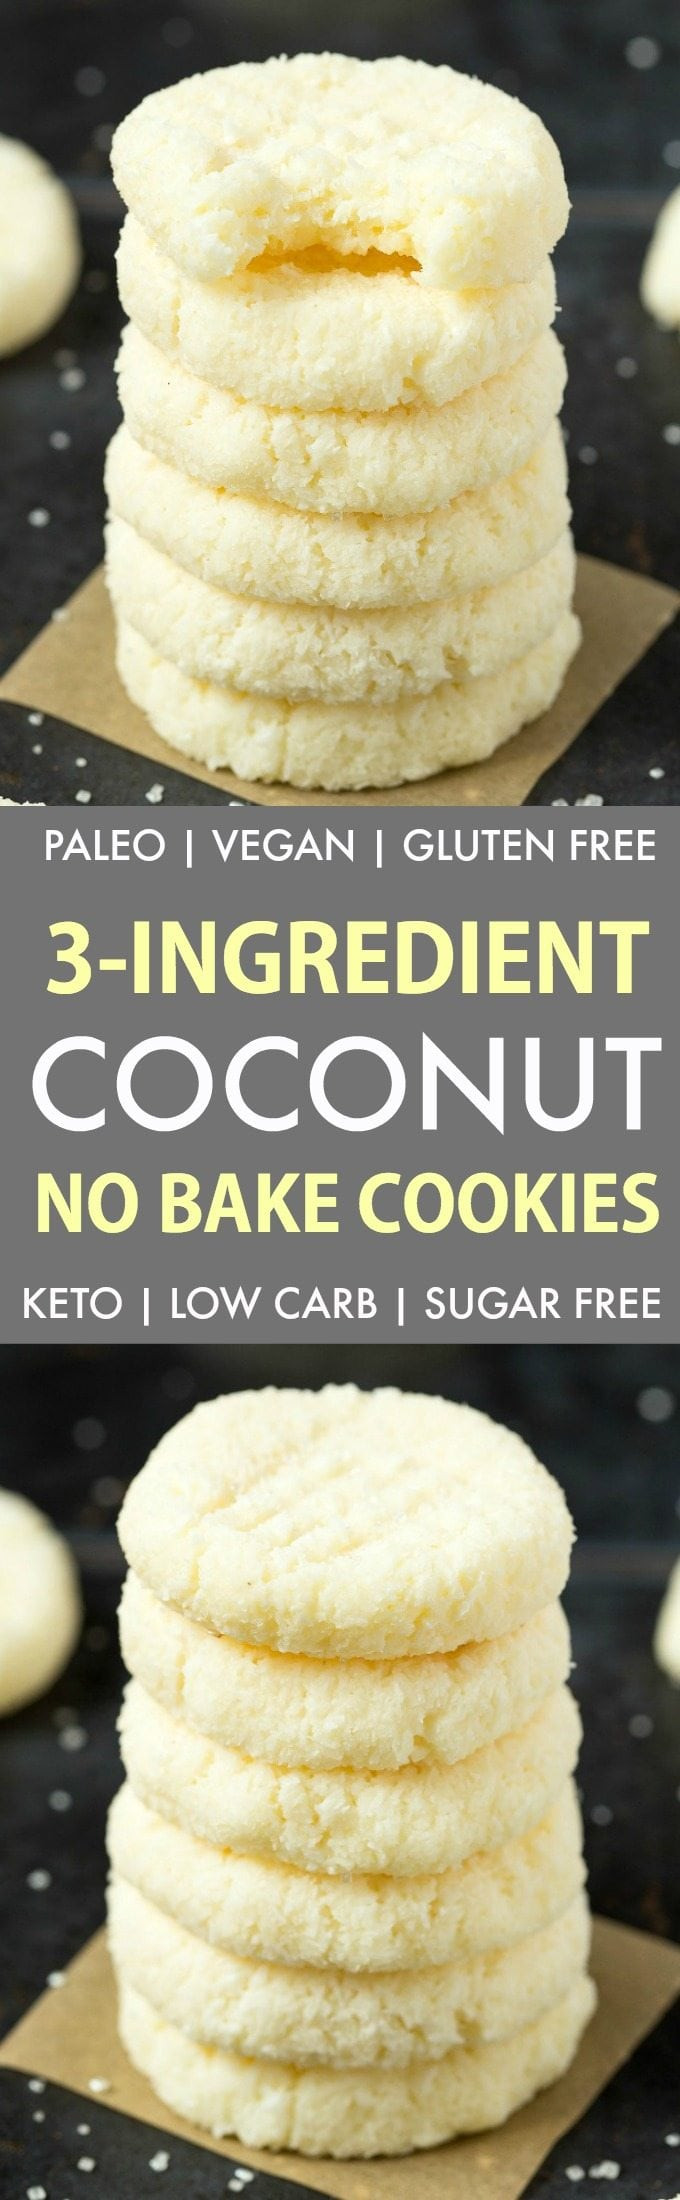 Keto Dessert Recipes 3 Ingredients No Bake
 3 Ingre nt Paleo Vegan No Bake Coconut Cookies Keto